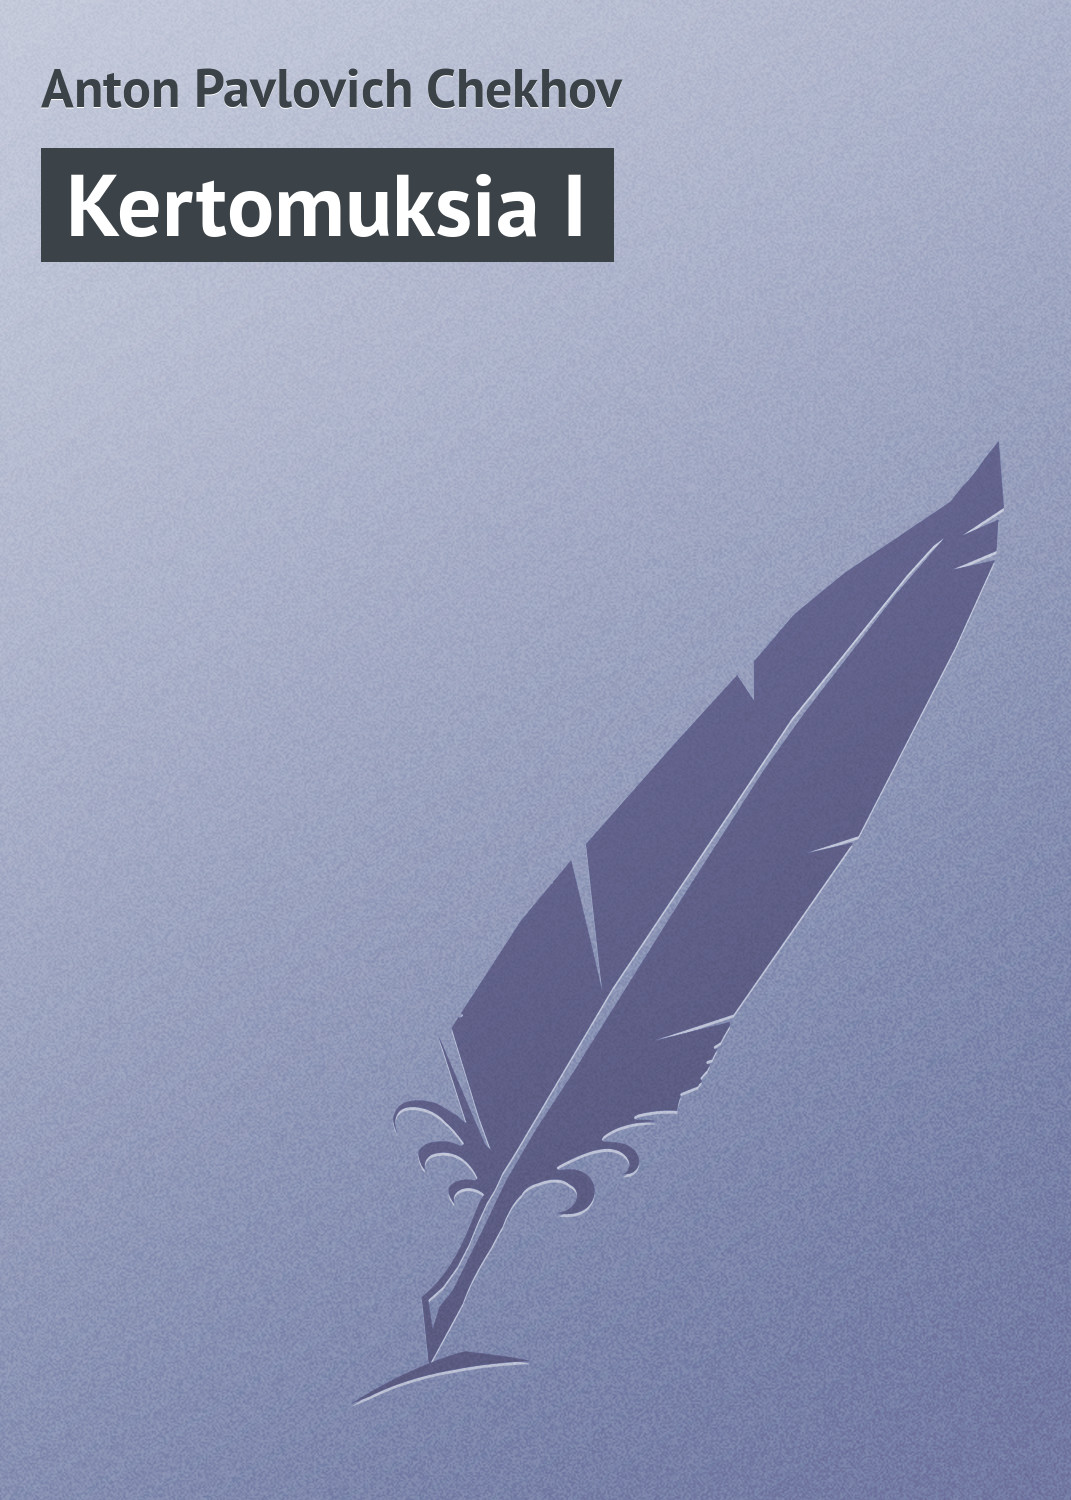 Книга Kertomuksia I из серии , созданная Anton Chekhov, может относится к жанру Зарубежная классика. Стоимость электронной книги Kertomuksia I с идентификатором 23166563 составляет 5.99 руб.